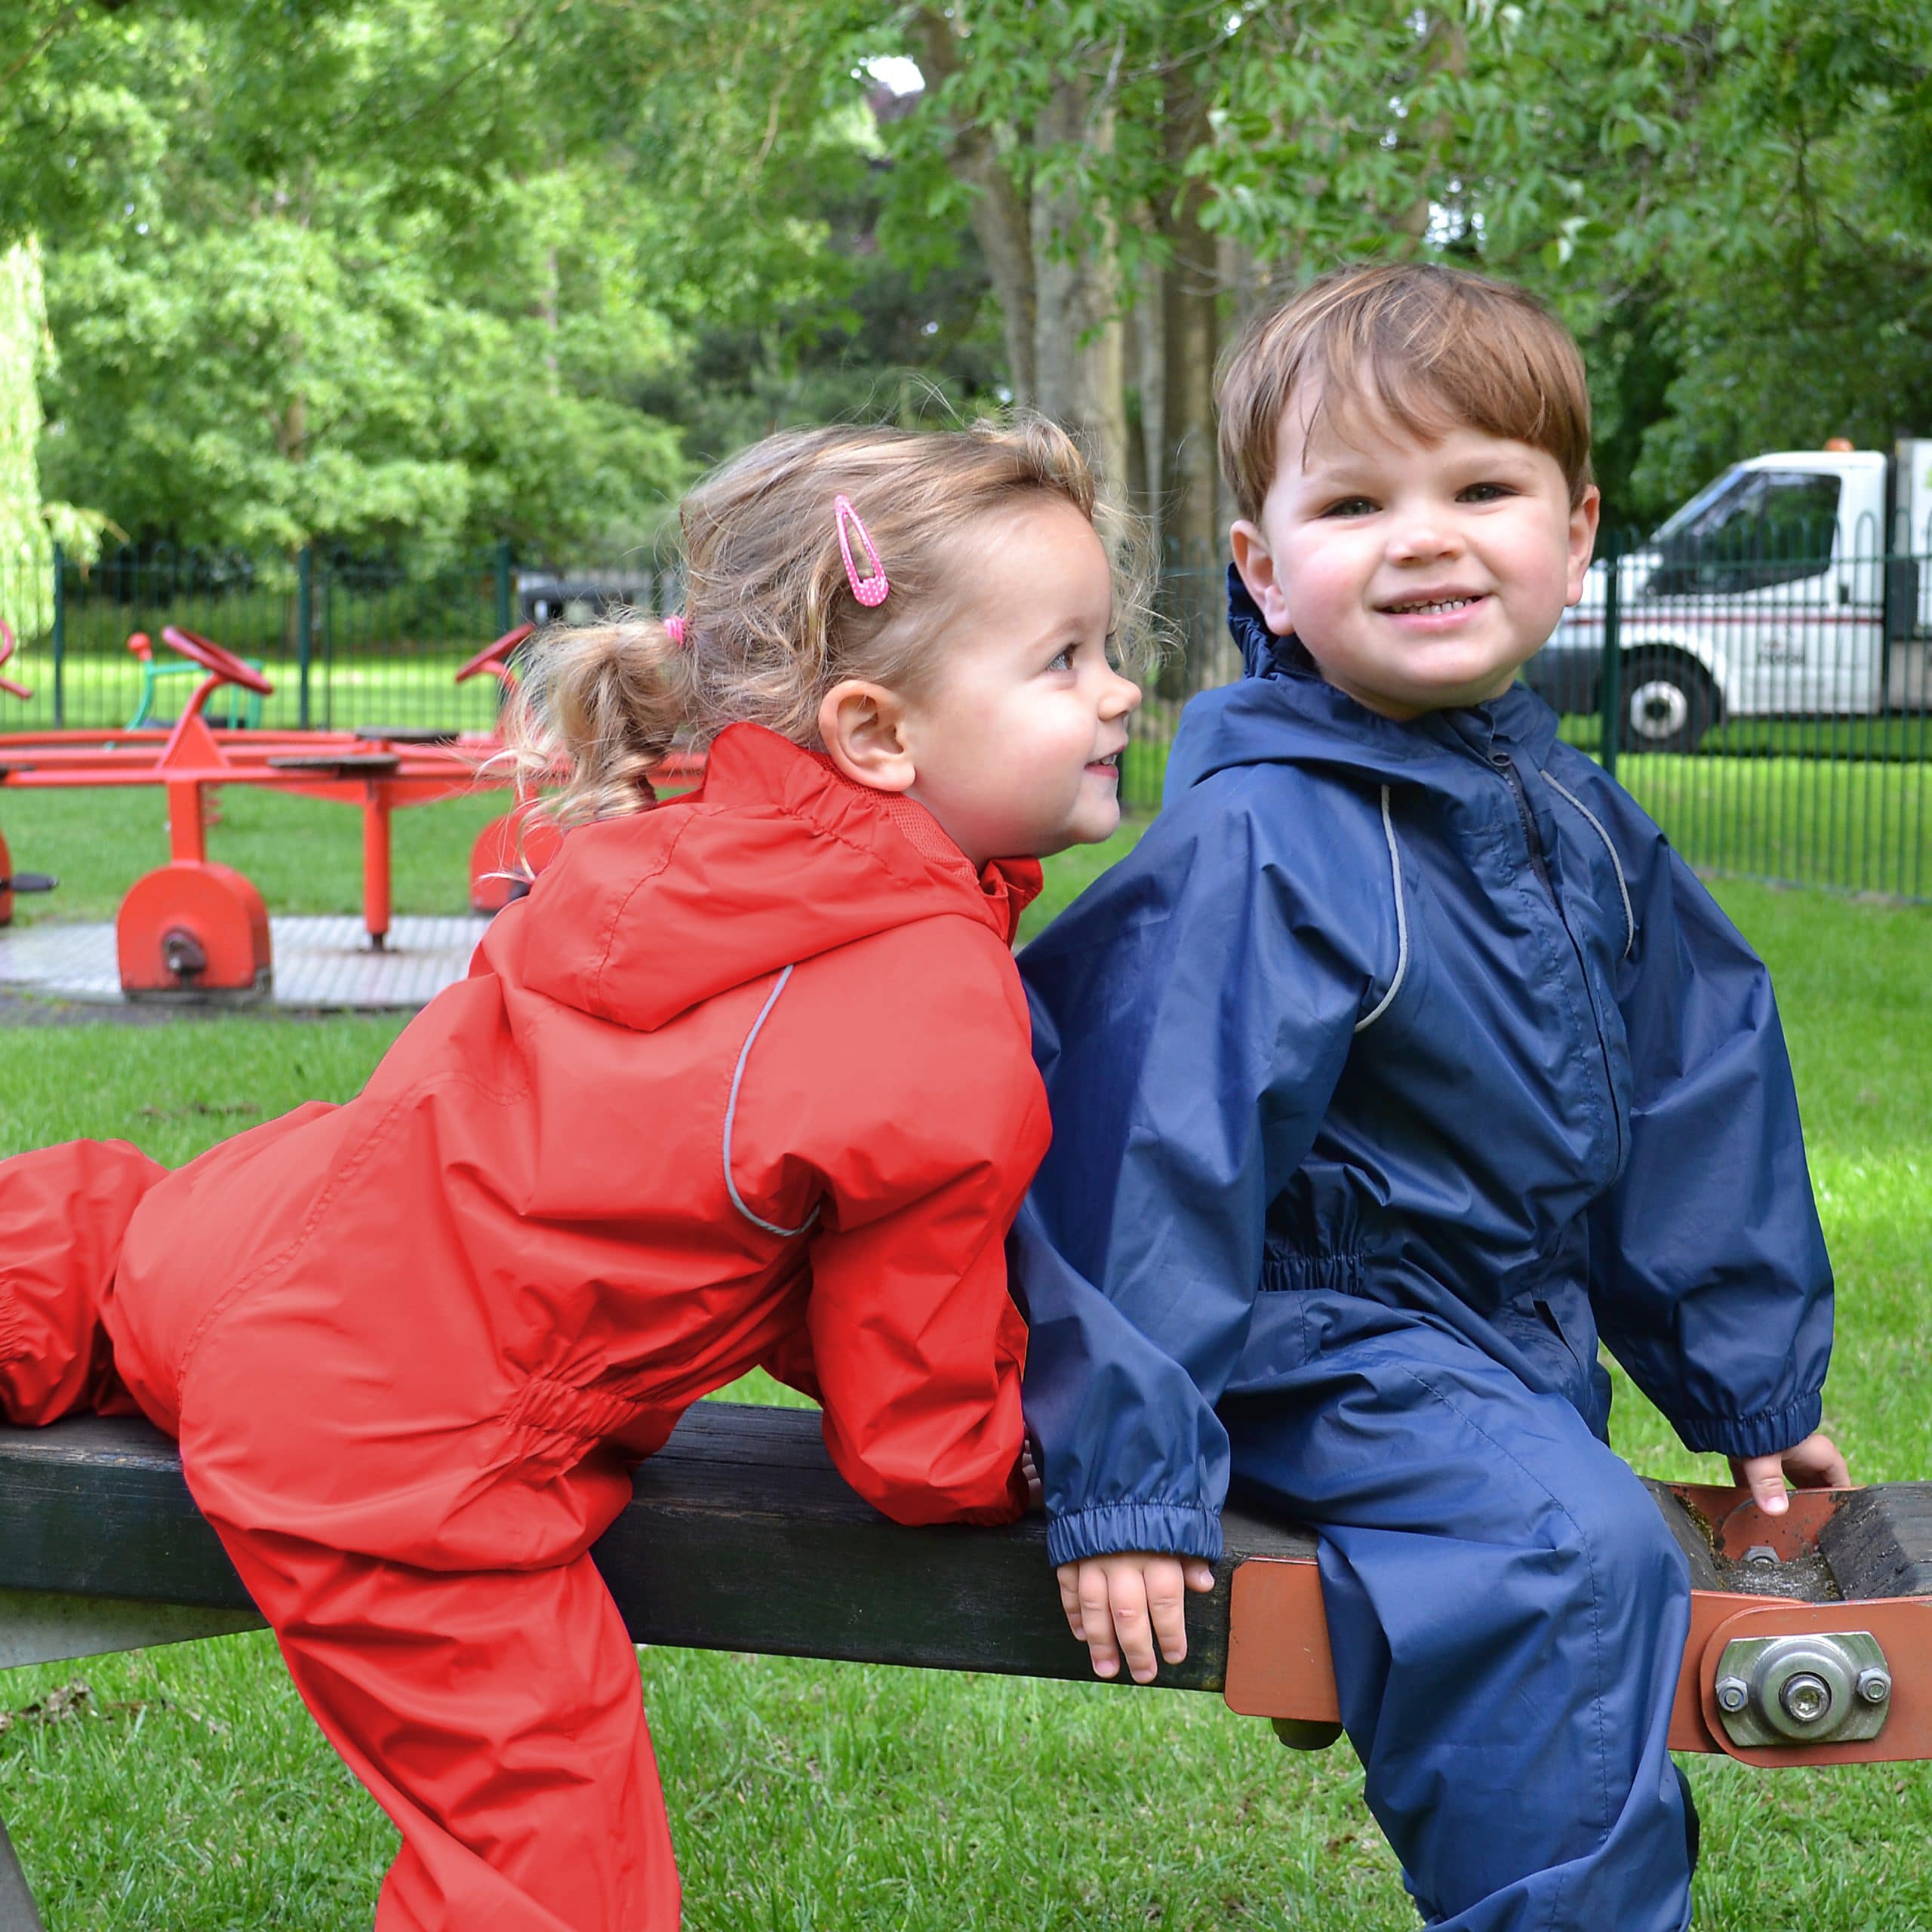 VALTRA: Child's reflective safety vest